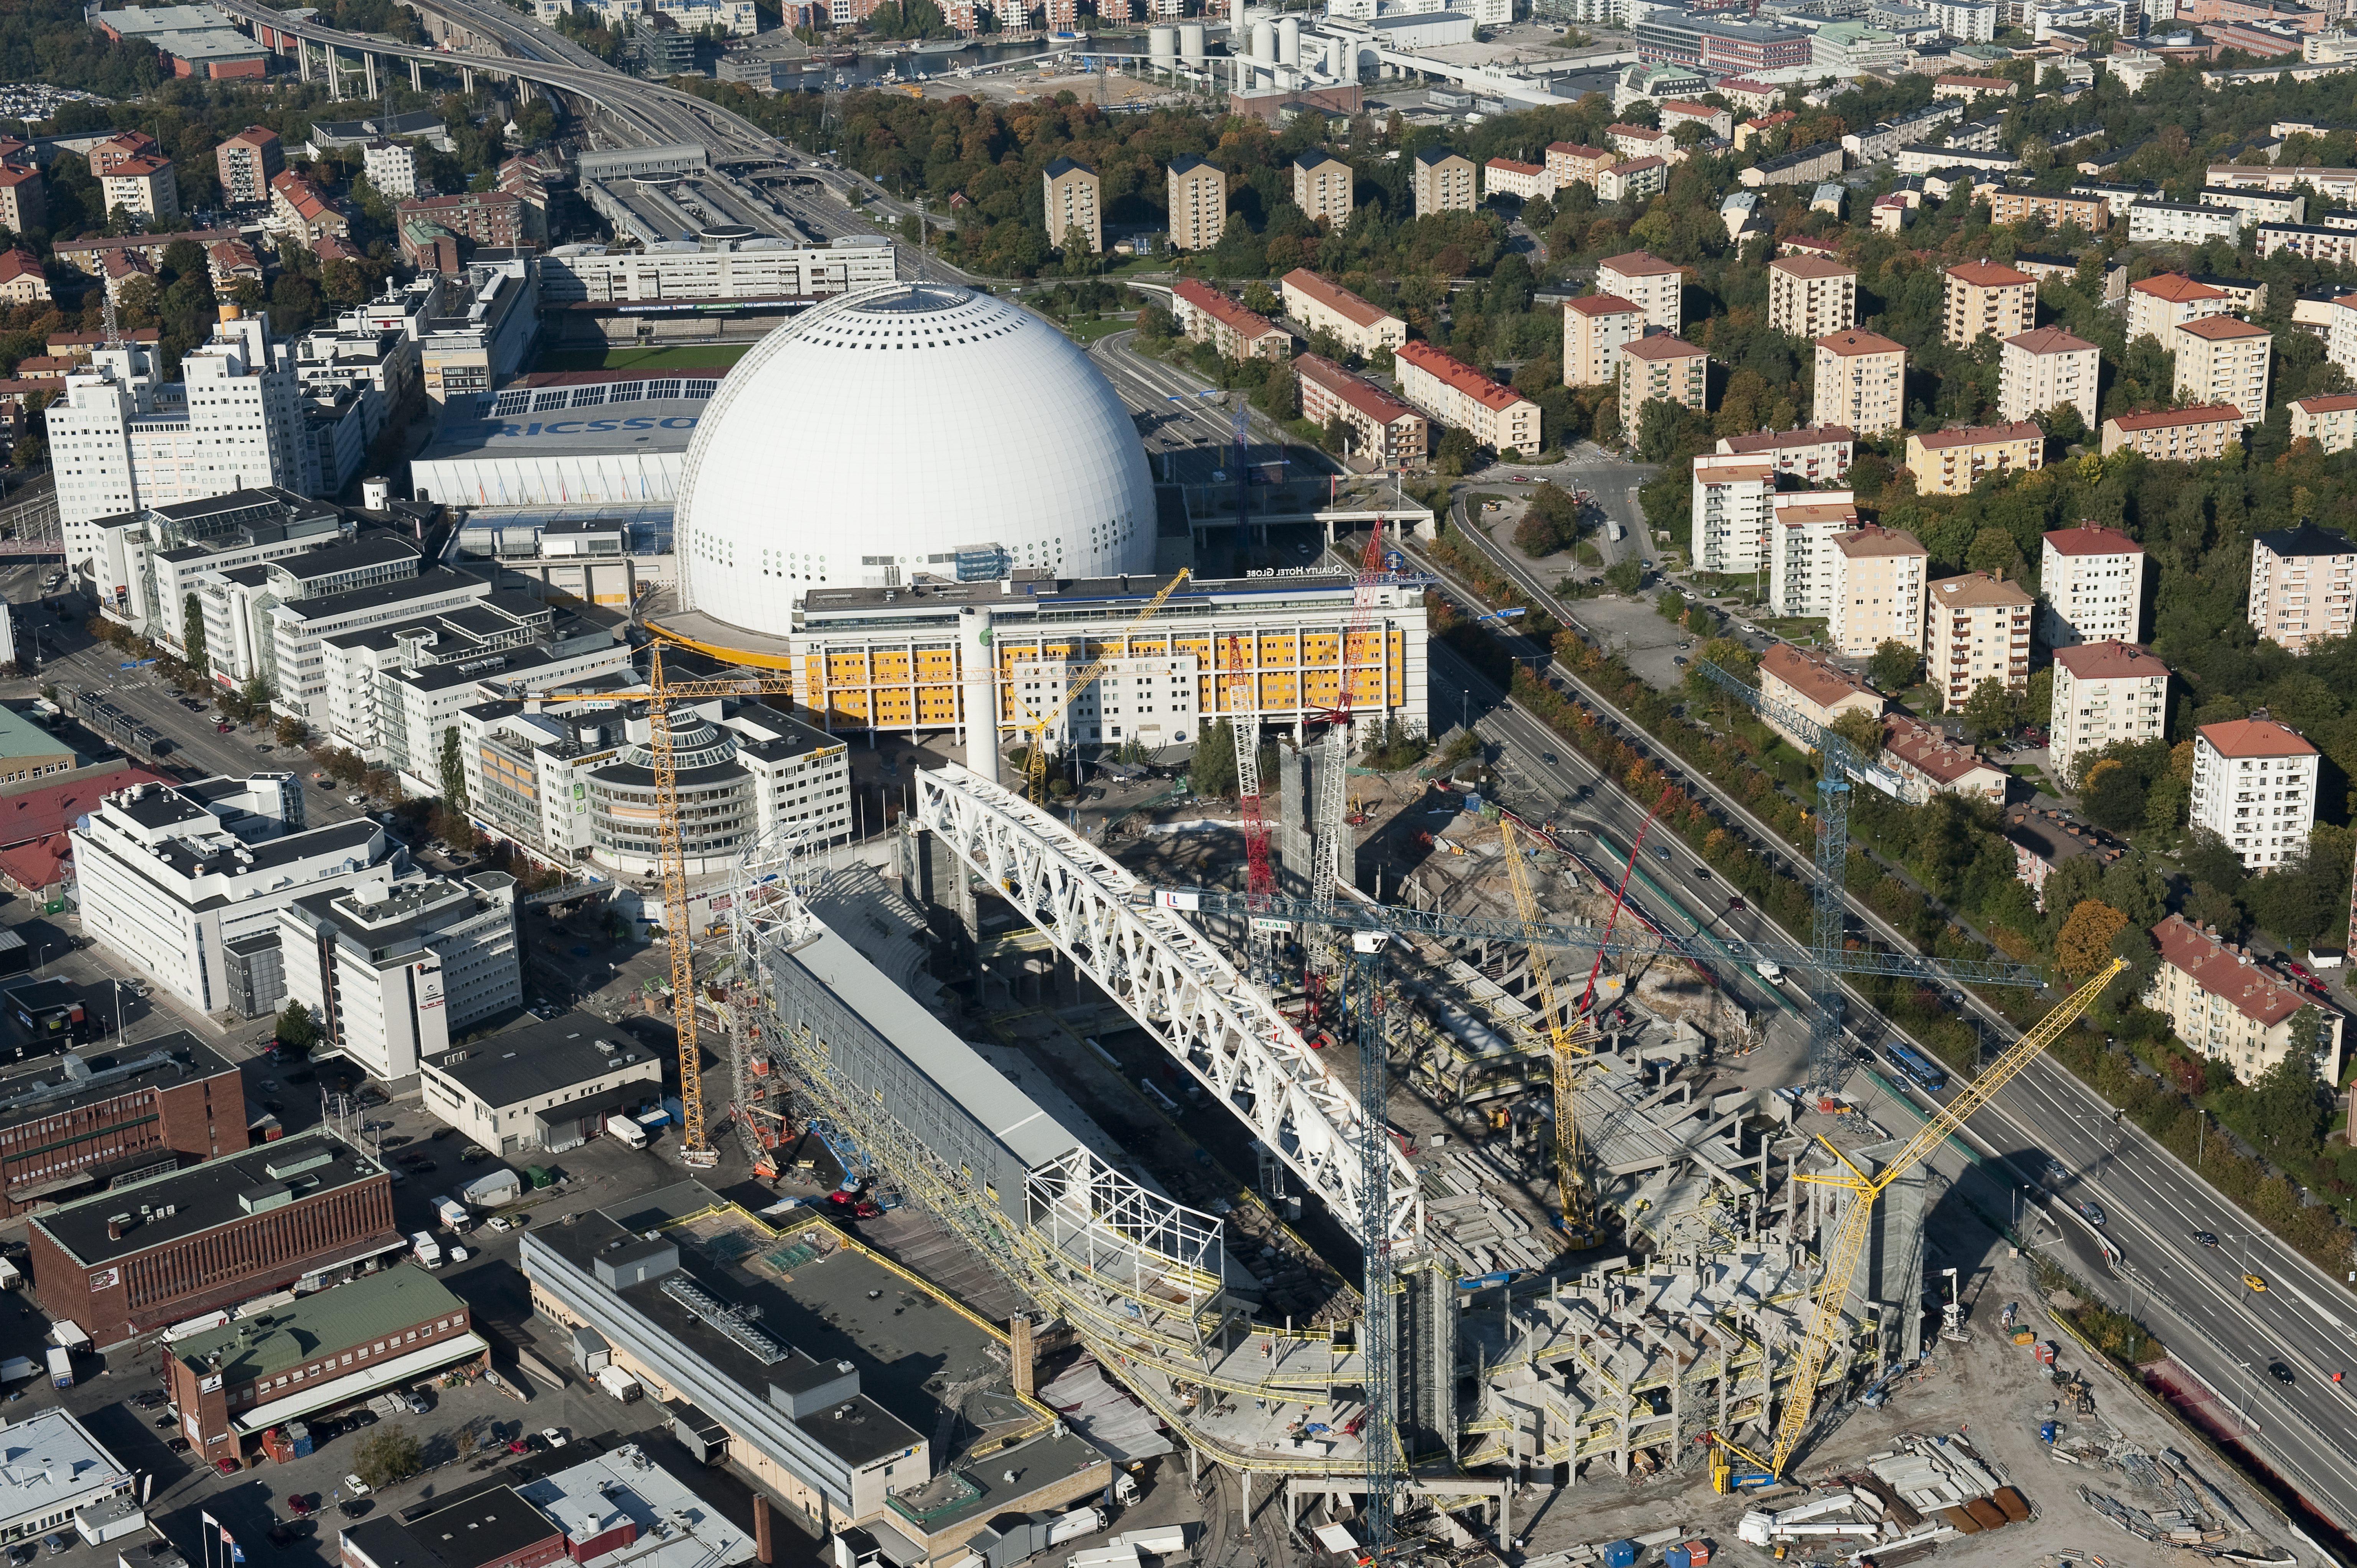 Båda klubbarna får 20 miljoner för förseningen av Stockholmsarenan/Tele2 Arena.